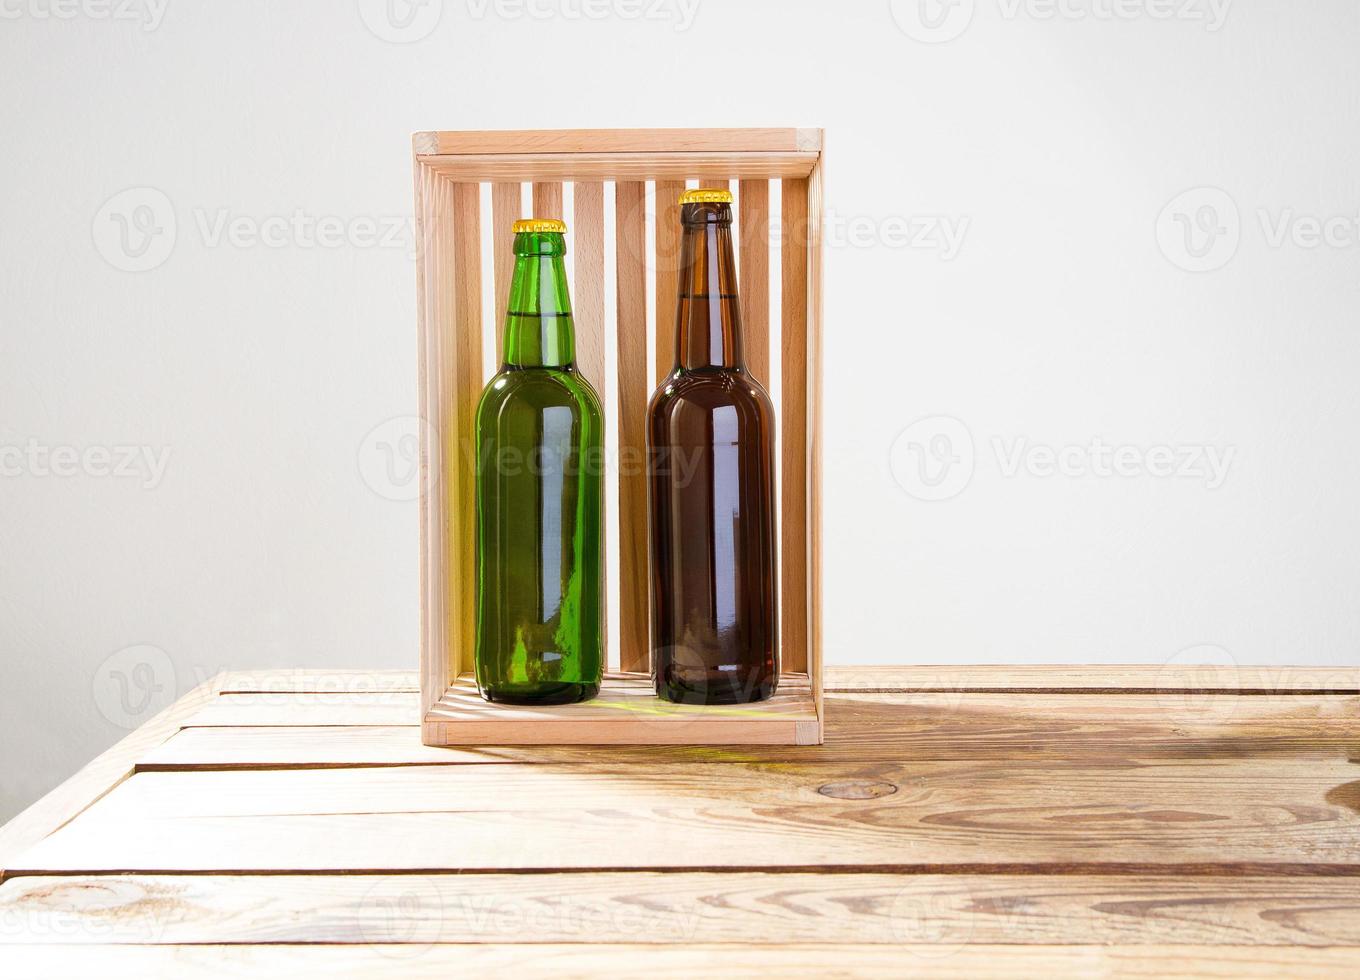 bouteilles de bière sur une table en bois. vue de dessus. mise au point sélective. maquette. copiez l'espace.modèle. Vide. photo